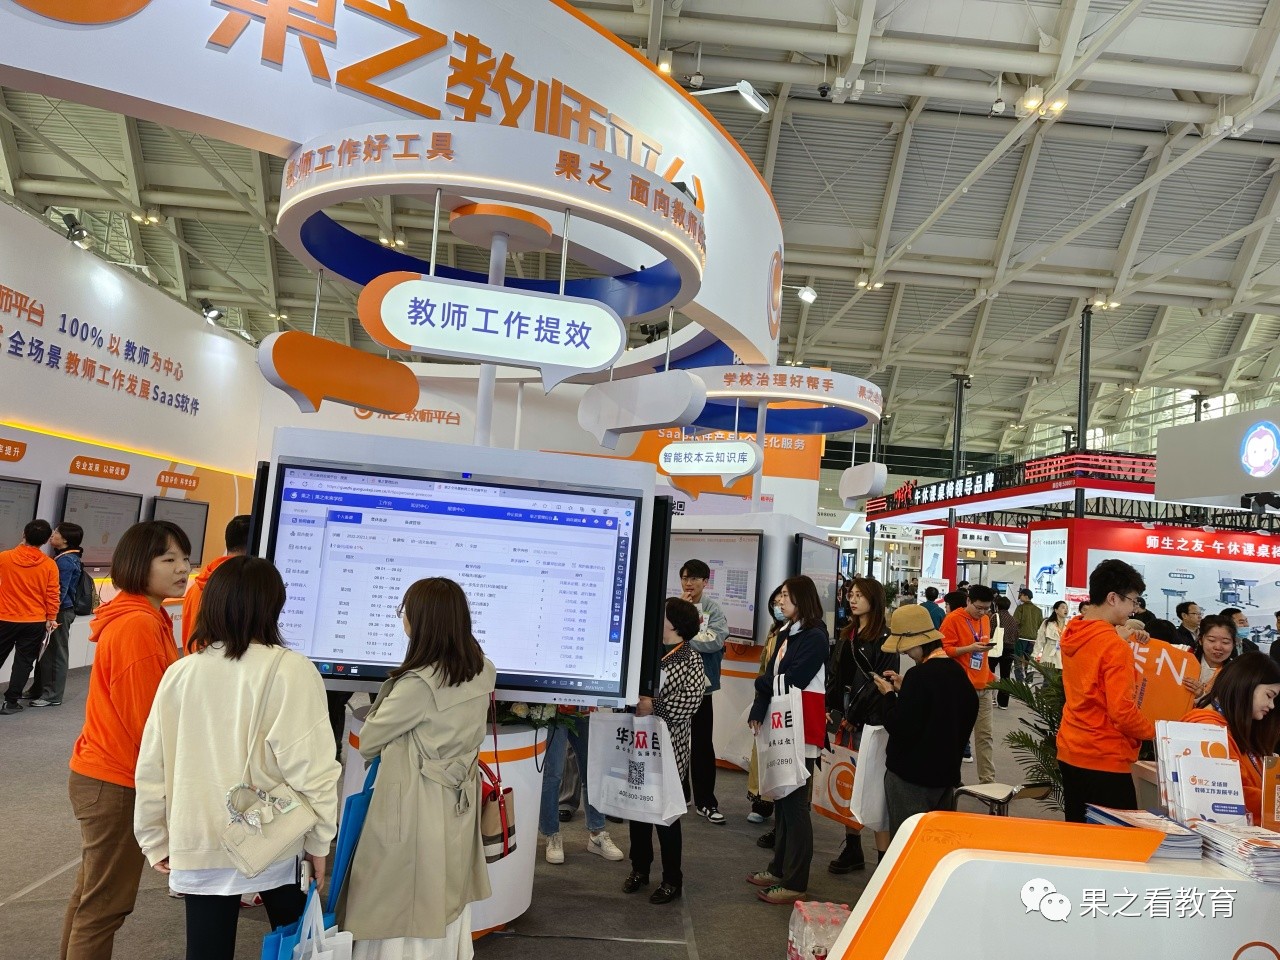 聚焦 | 「果之教师平台」第82届中国教育装备展示会精彩纷呈